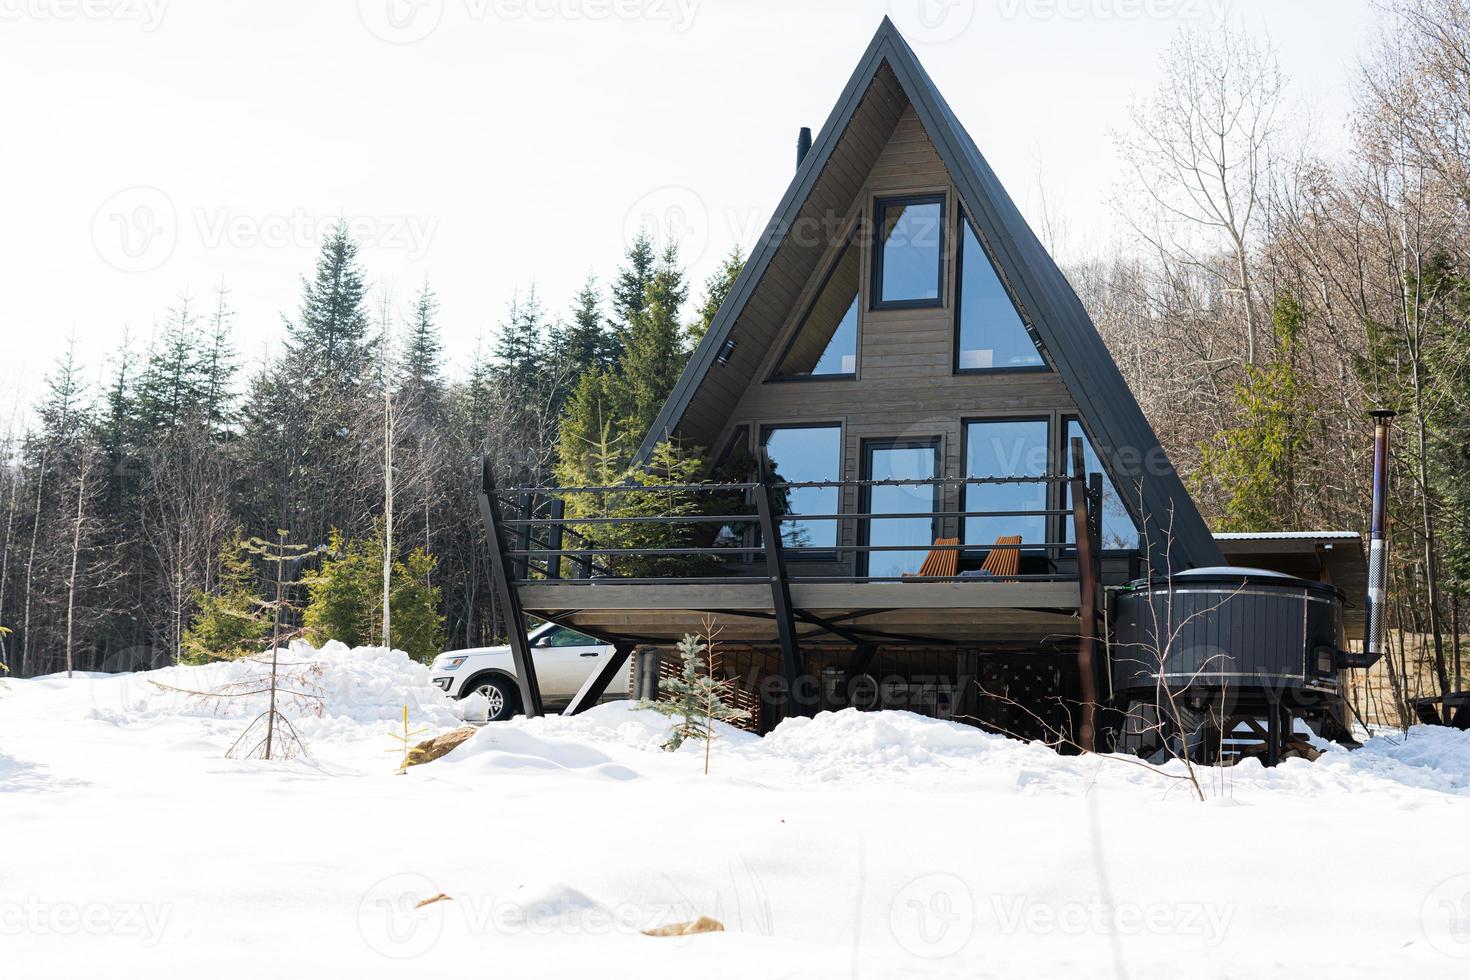 de madera triángulo país minúsculo cabina casa con caliente tina spa y suv coche en montañas. alma fines de semana foto